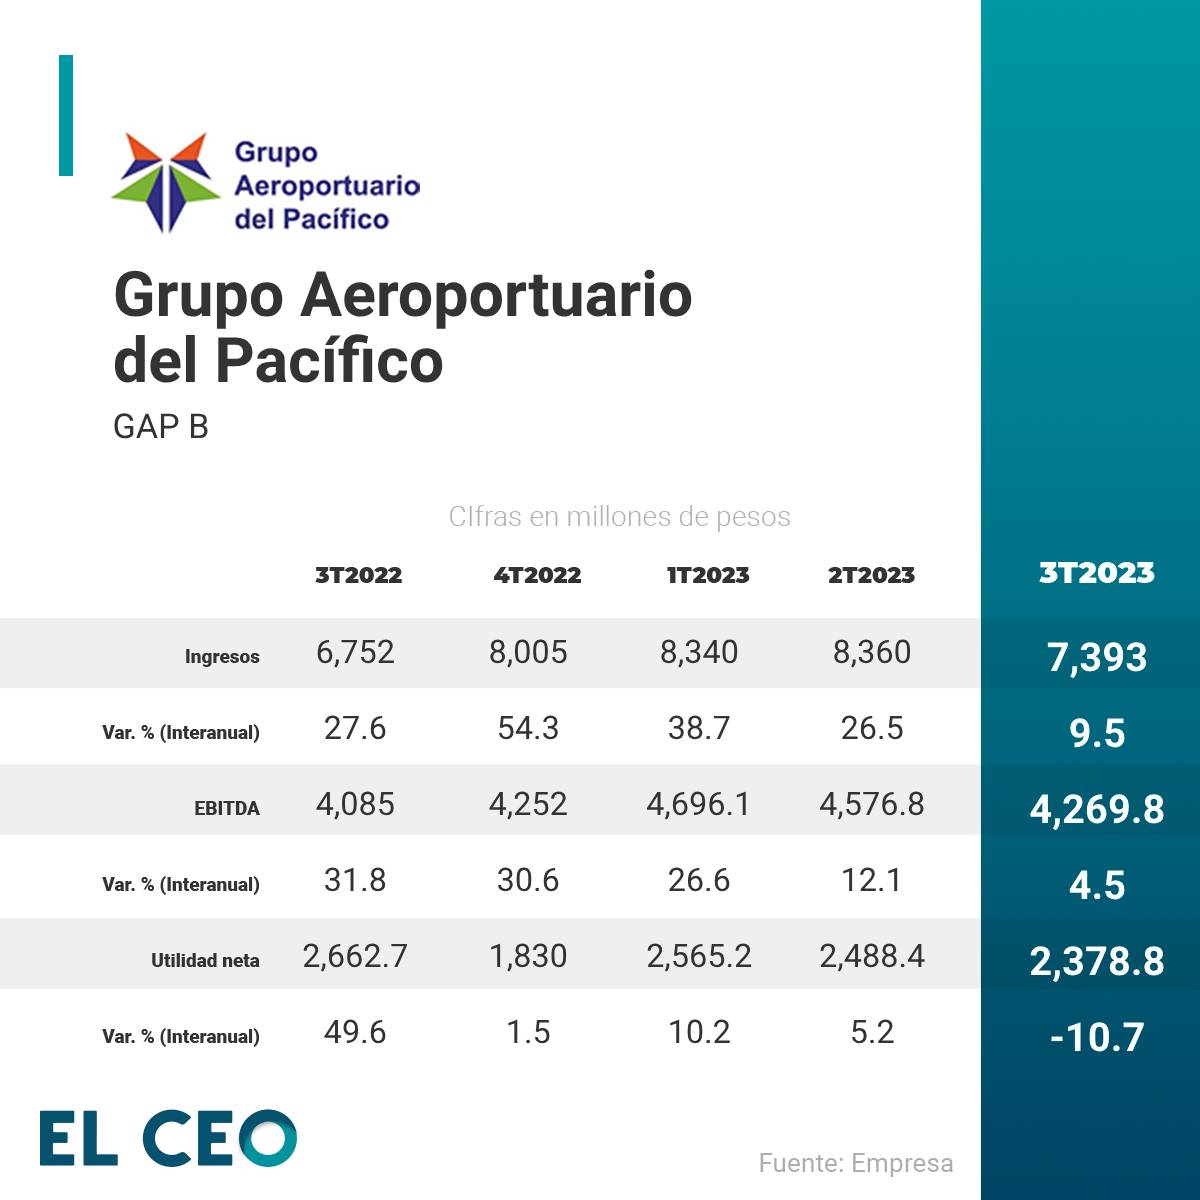 GAP Grupo Aeroportuario del Pacífico Guadalajara